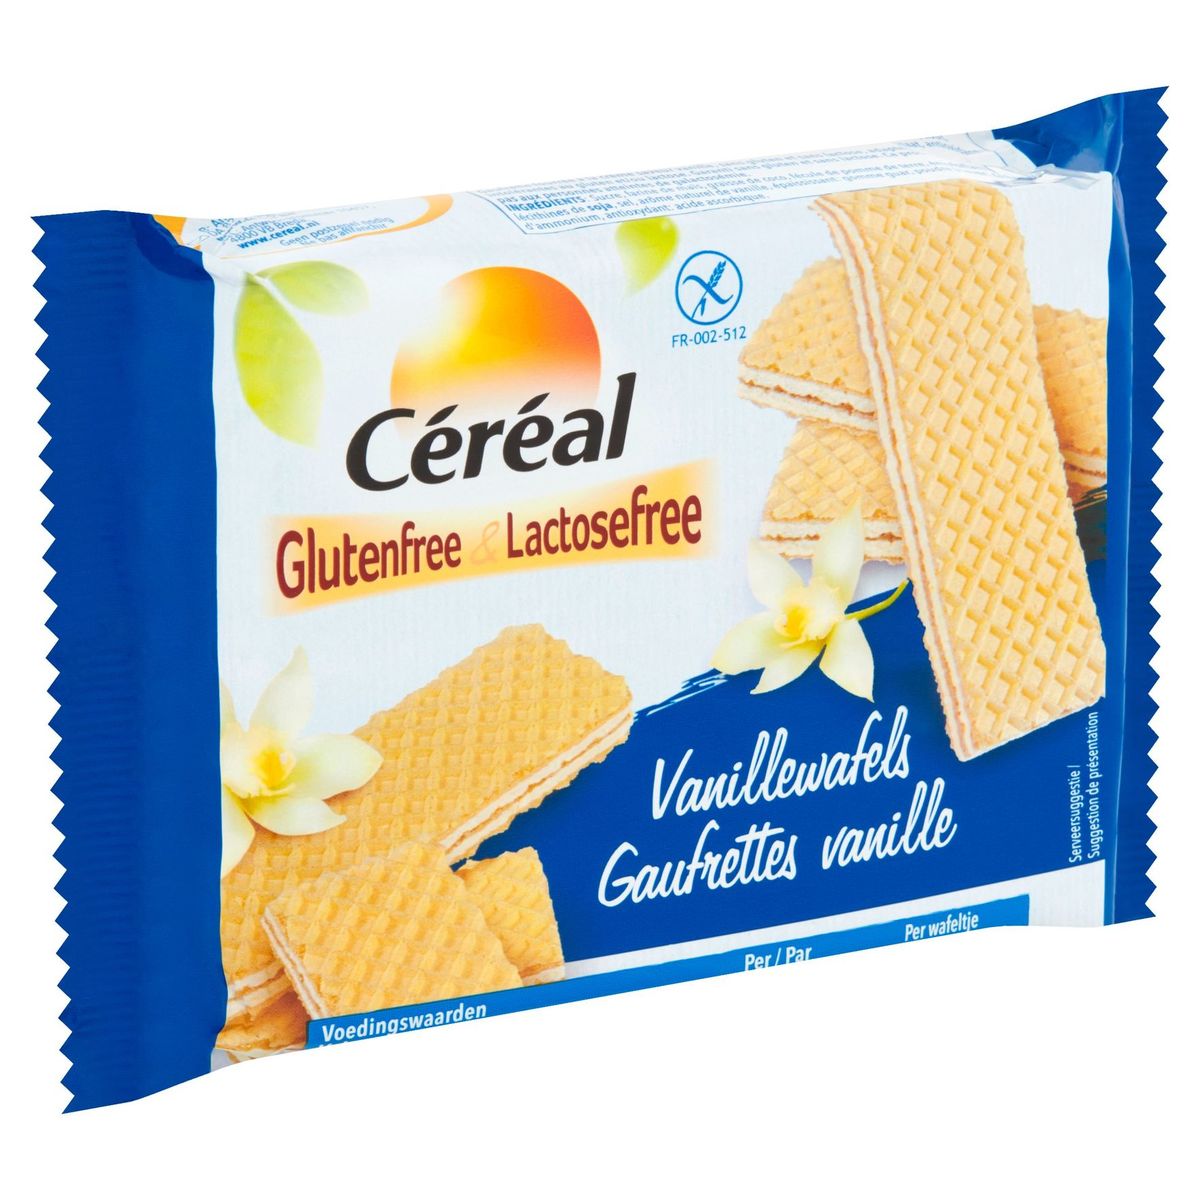 Céréal Glutenfree & Lactosefree Vanillewafels 125 g